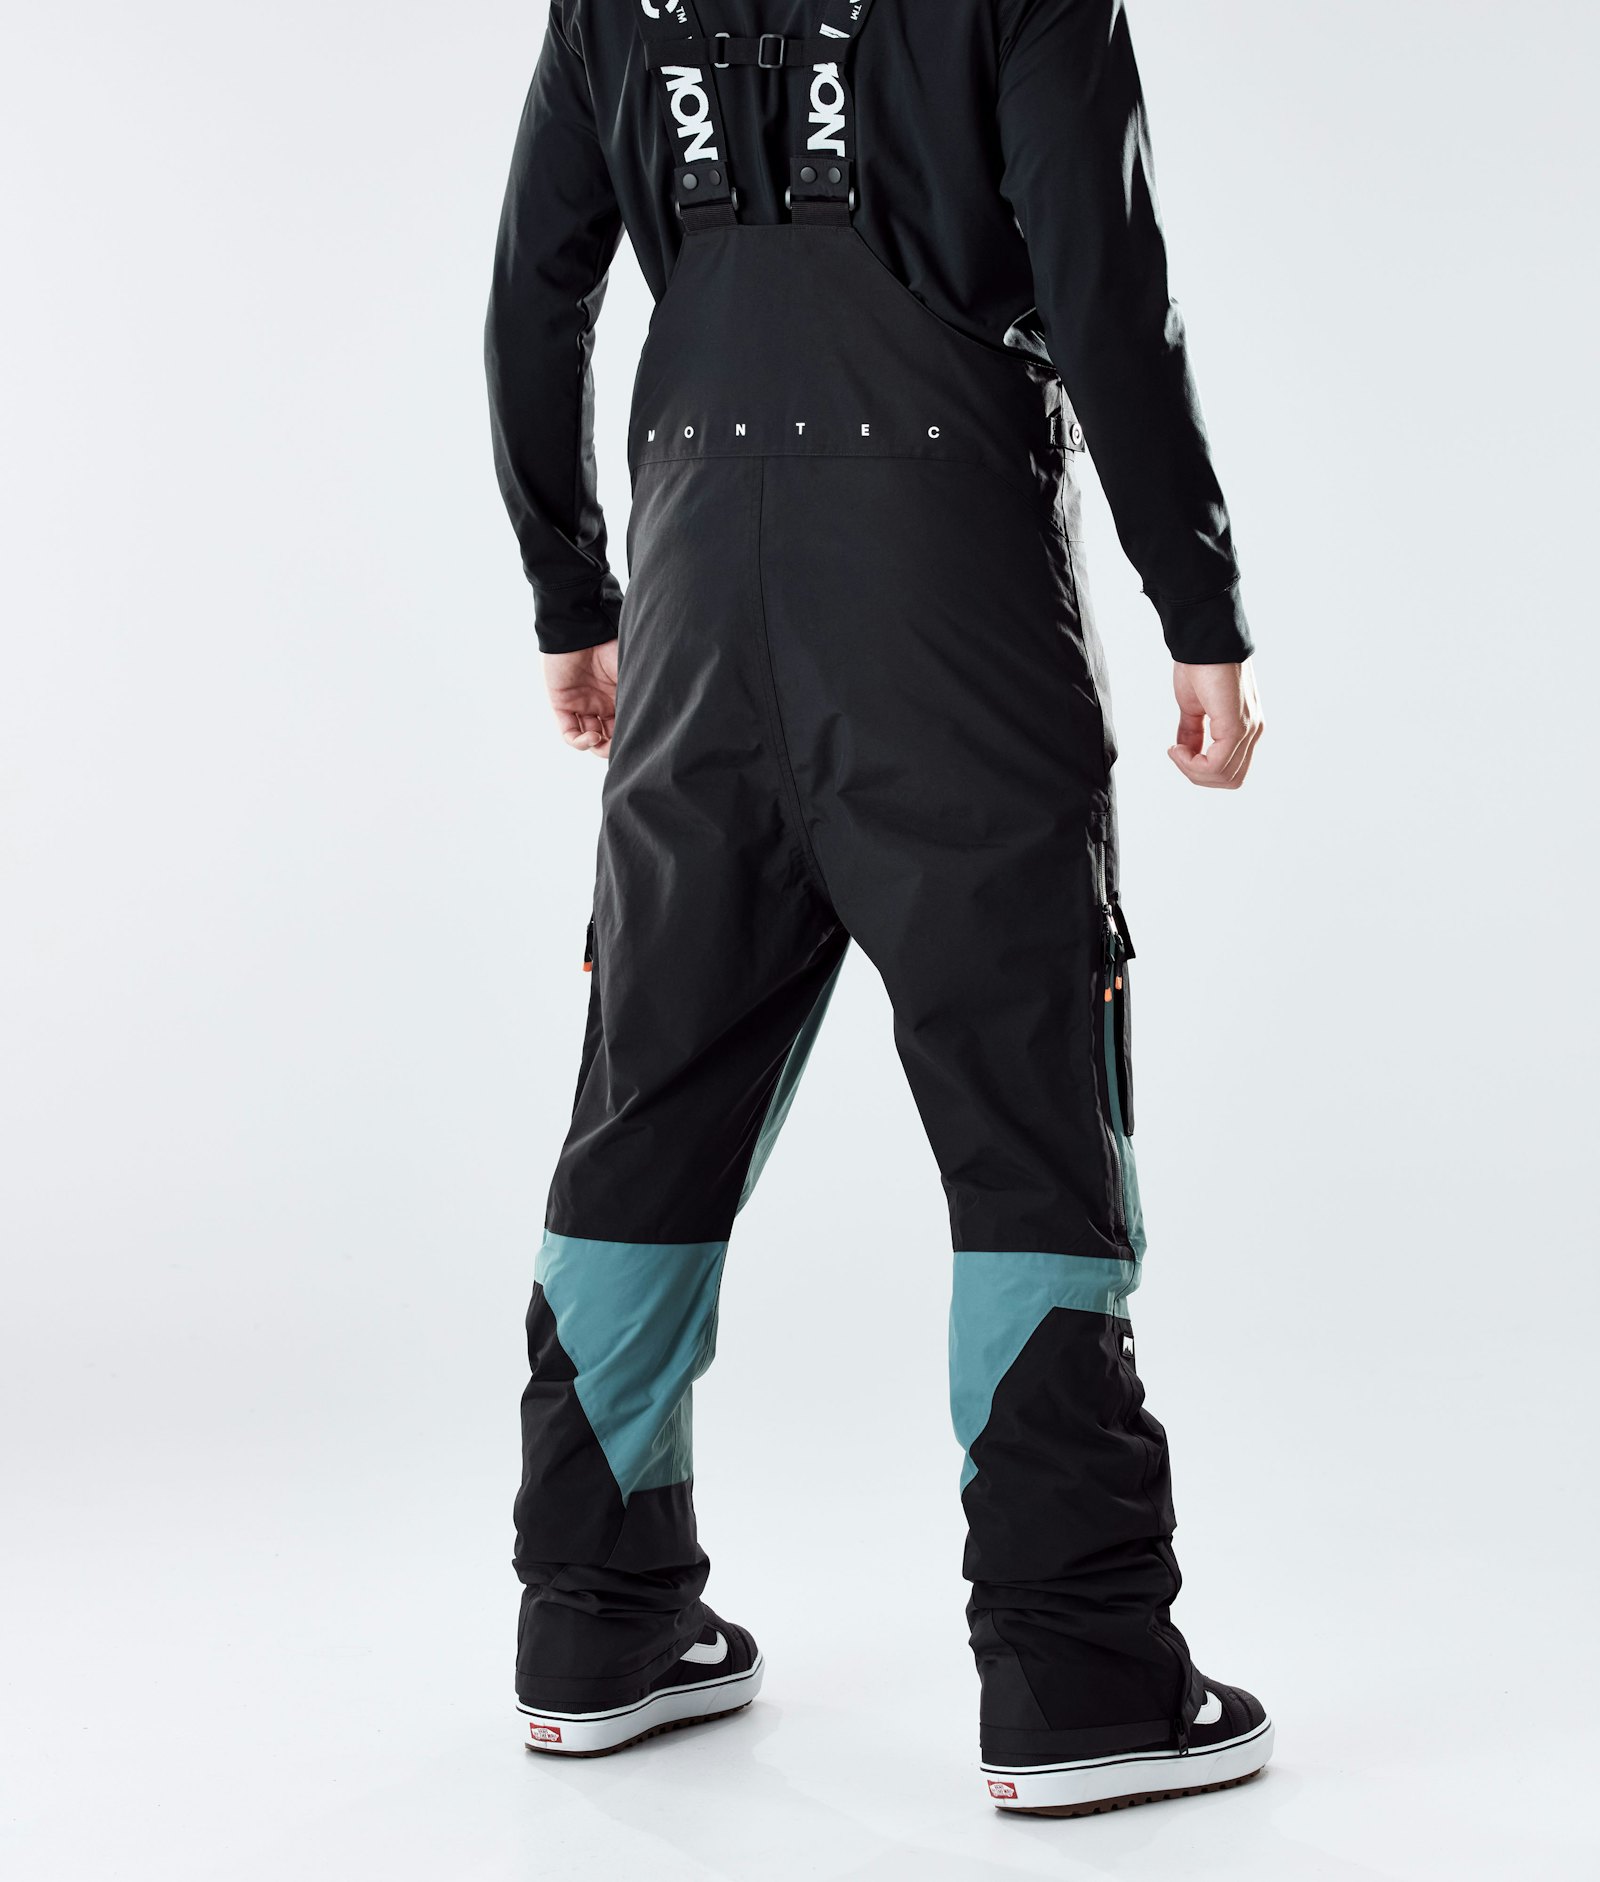 Montec Fawk 2020 Pantalones Snowboard Hombre Black/Atlantic